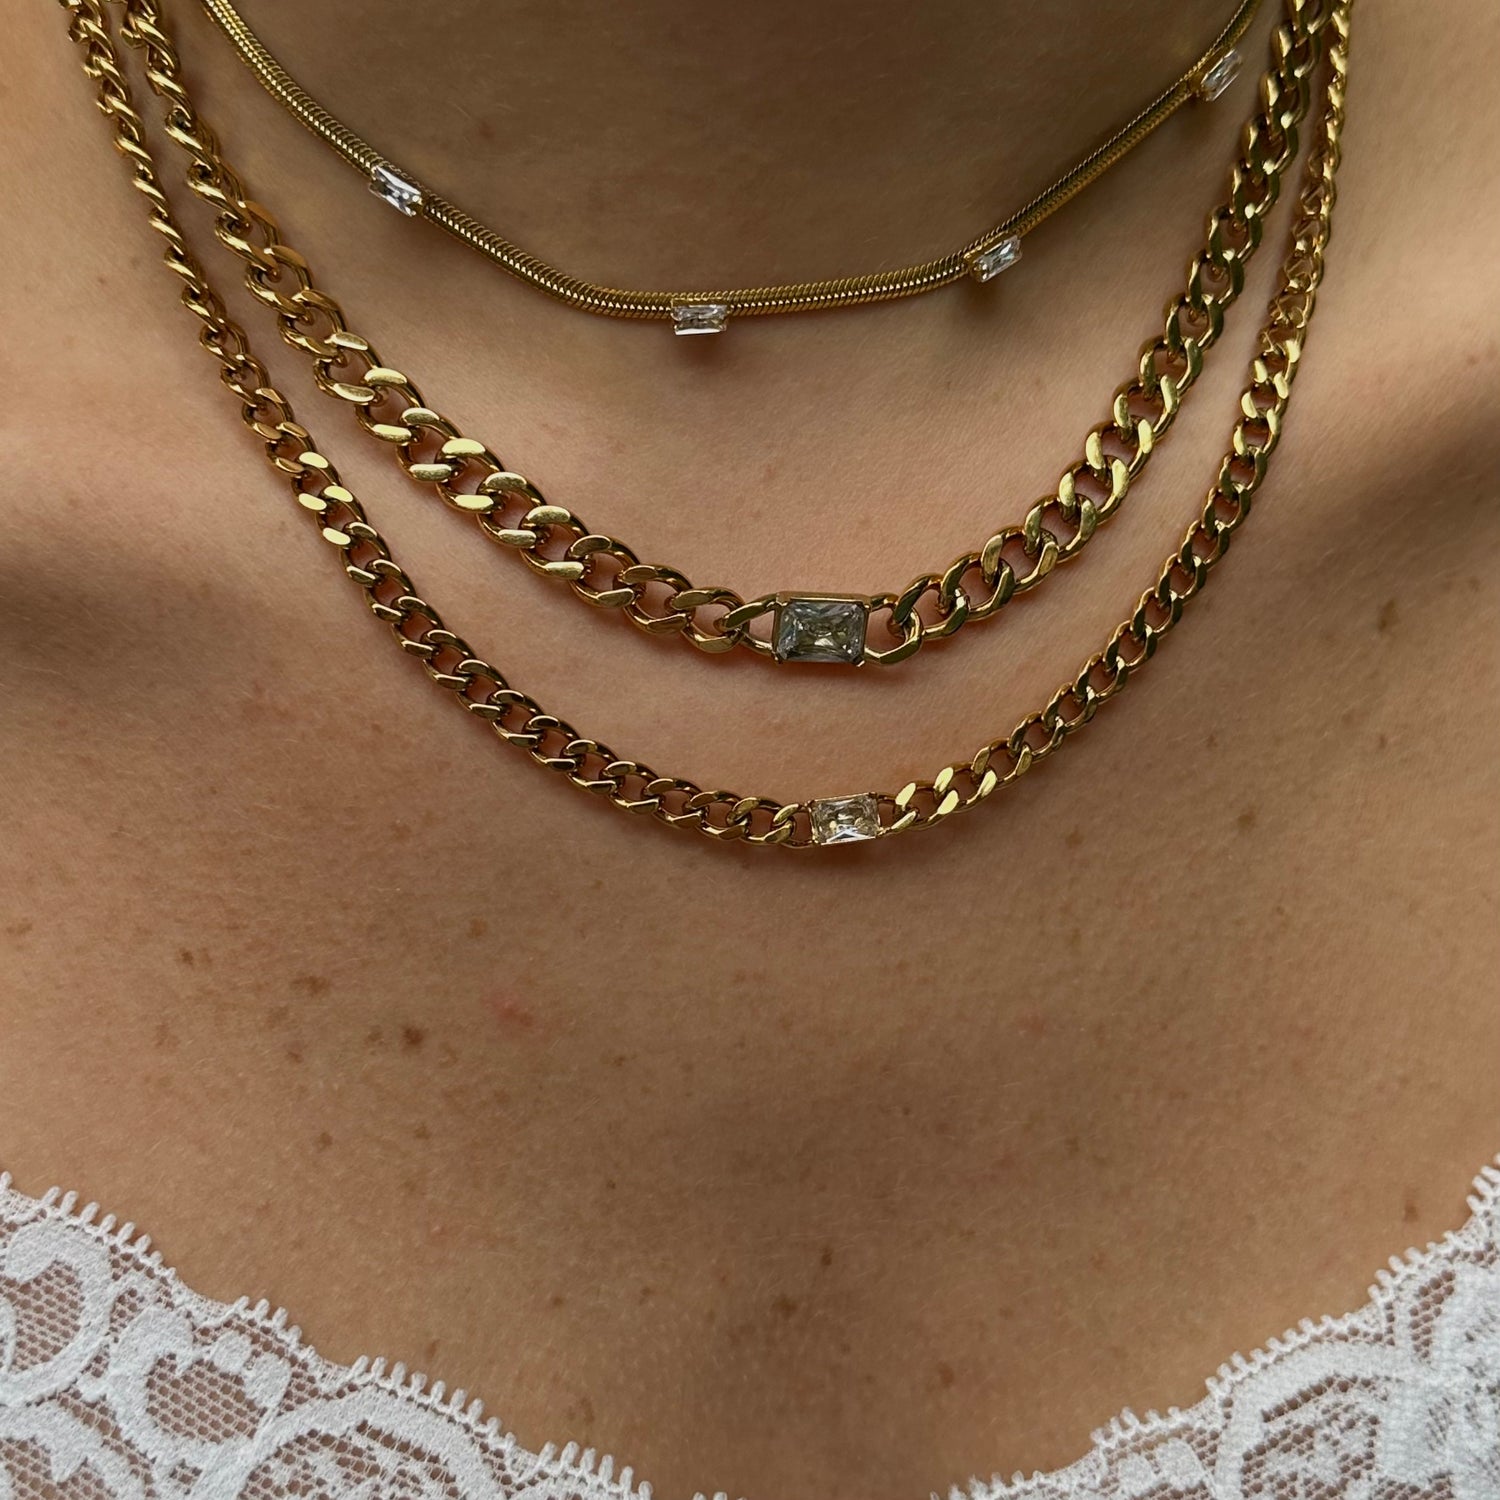 Martini Necklace